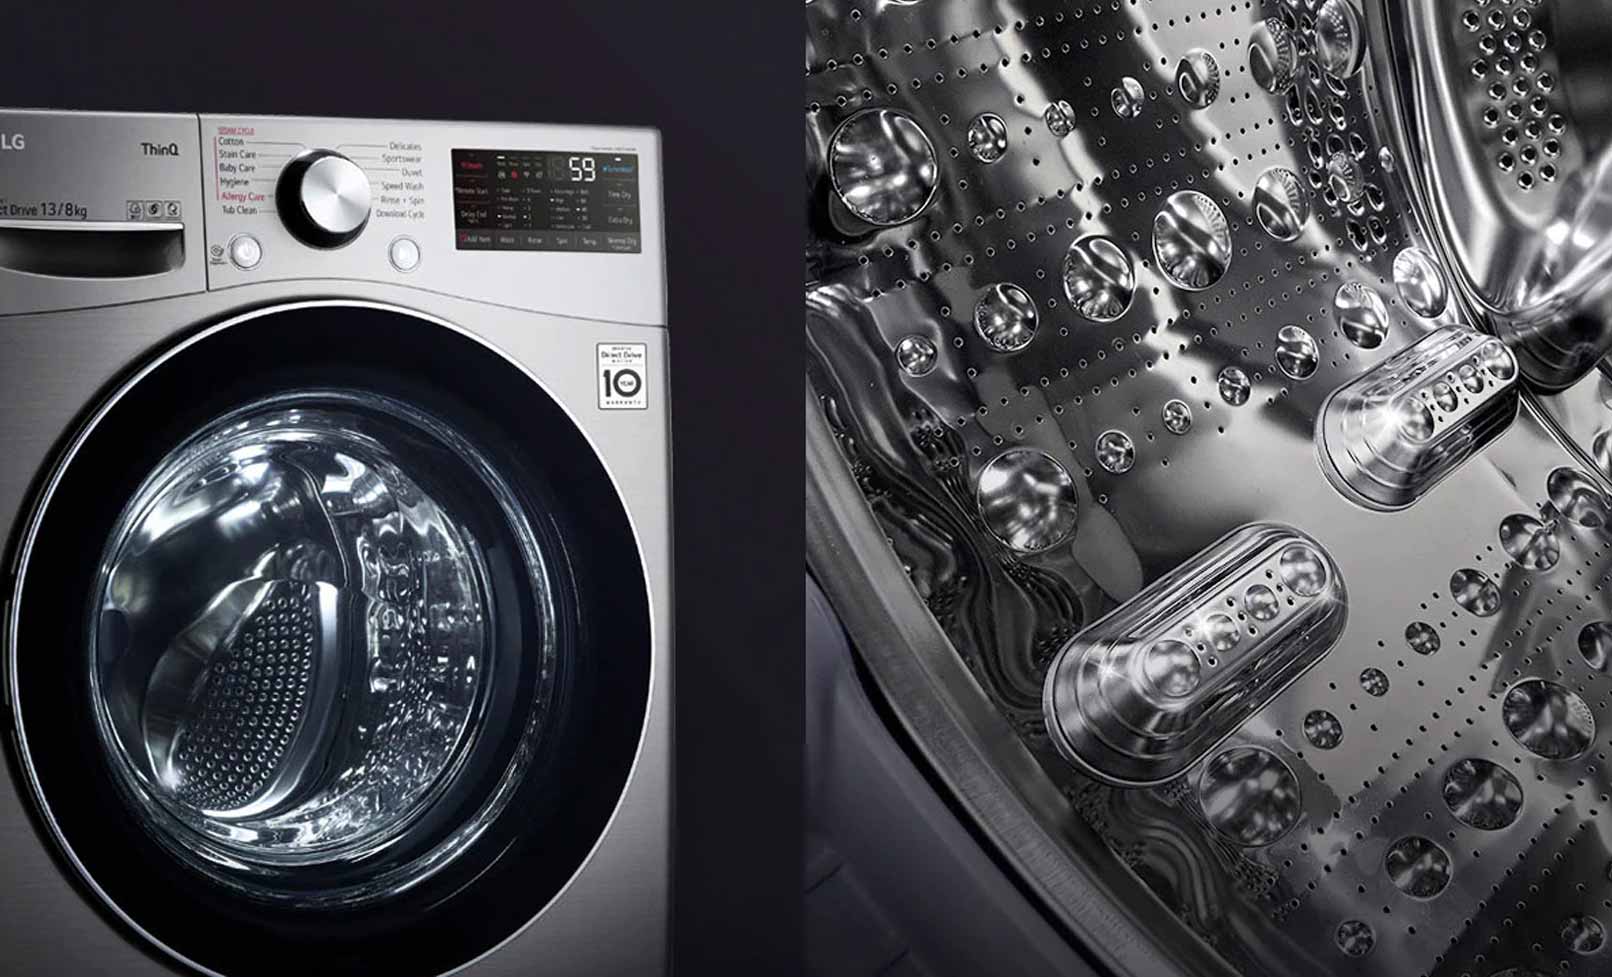 LG Front Load Washer & Dryer, 13/8 Kg - F15L9DGD 